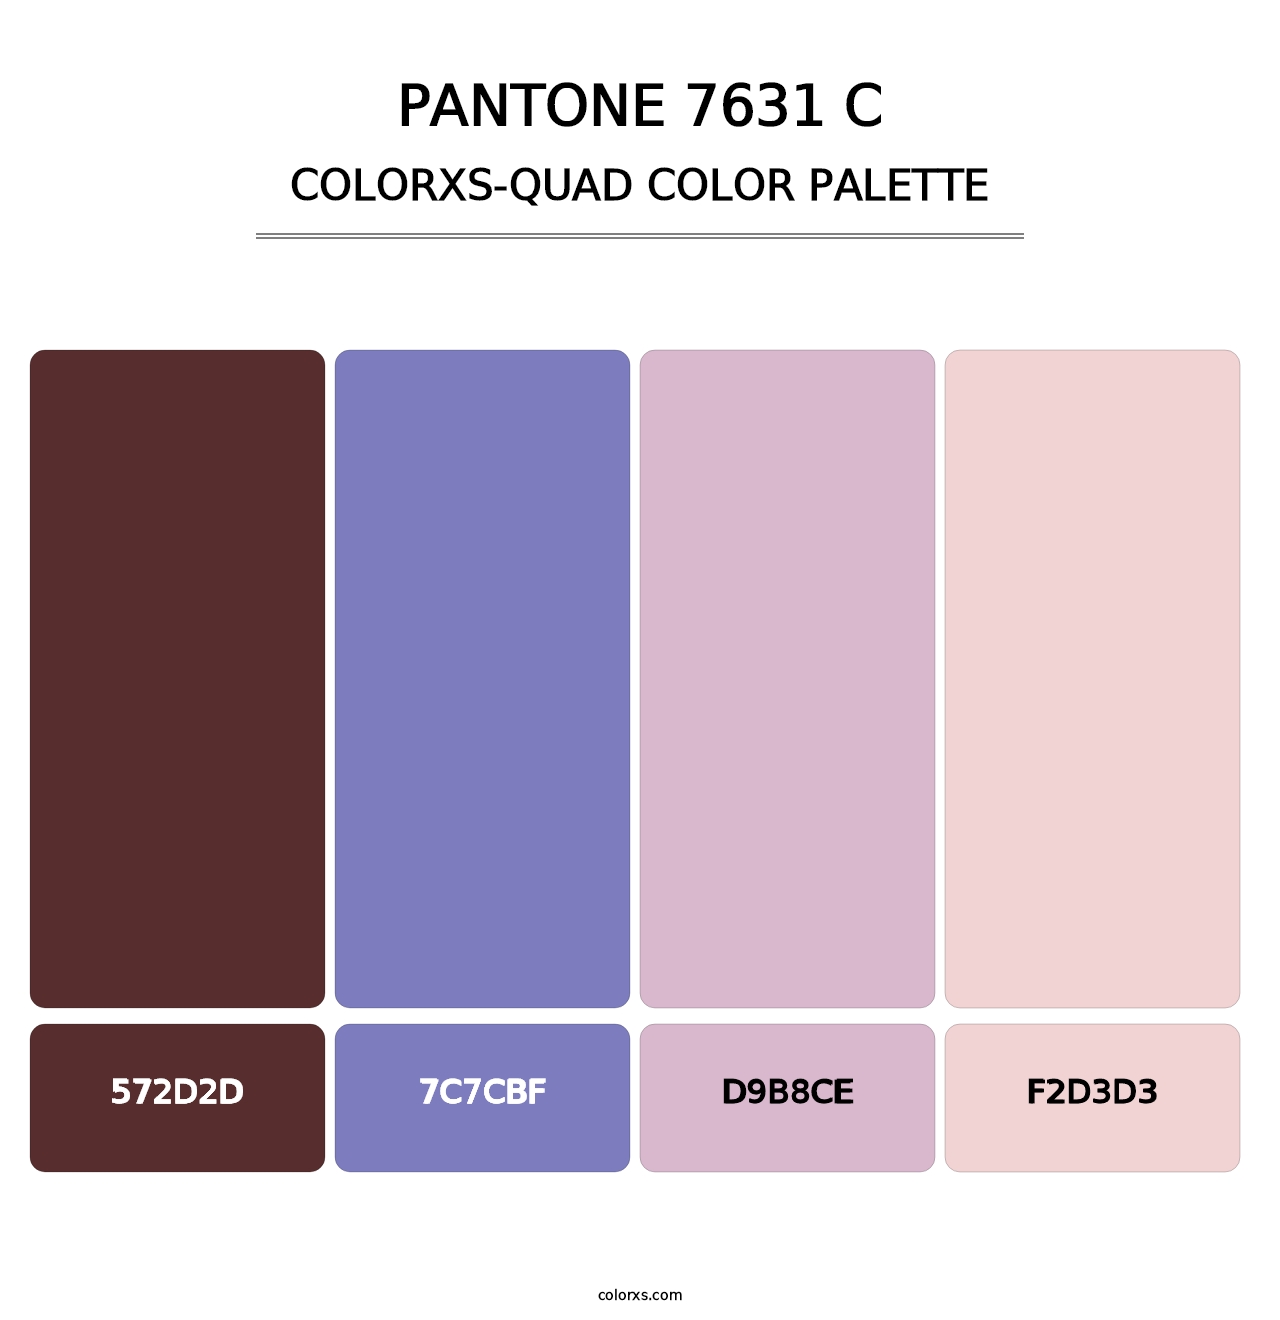 PANTONE 7631 C - Colorxs Quad Palette